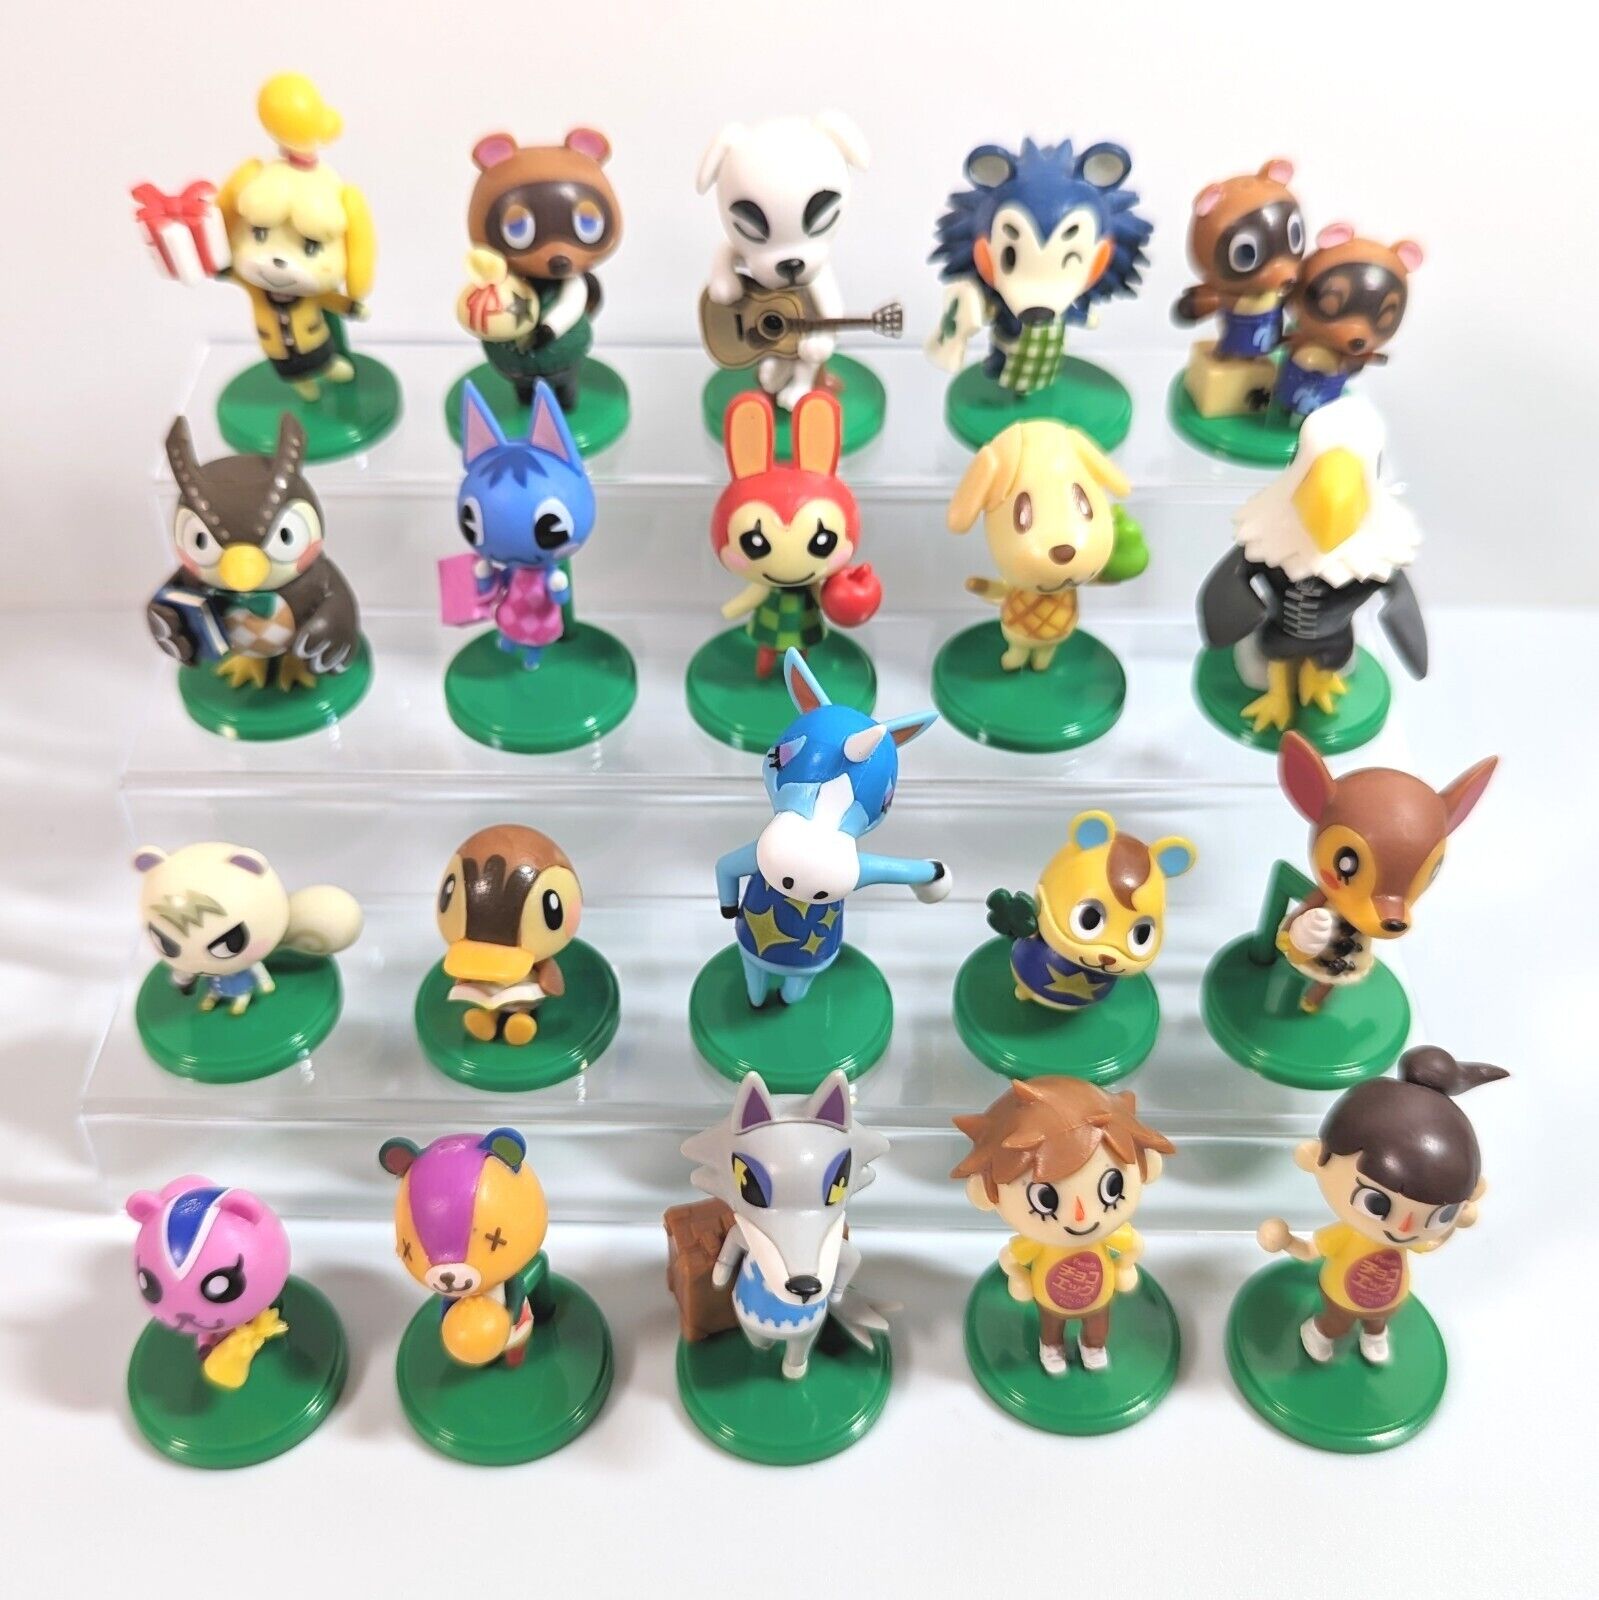 Animal Crossing Mini Figure Figurine Full Complete Set of 20 Choco Egg Used